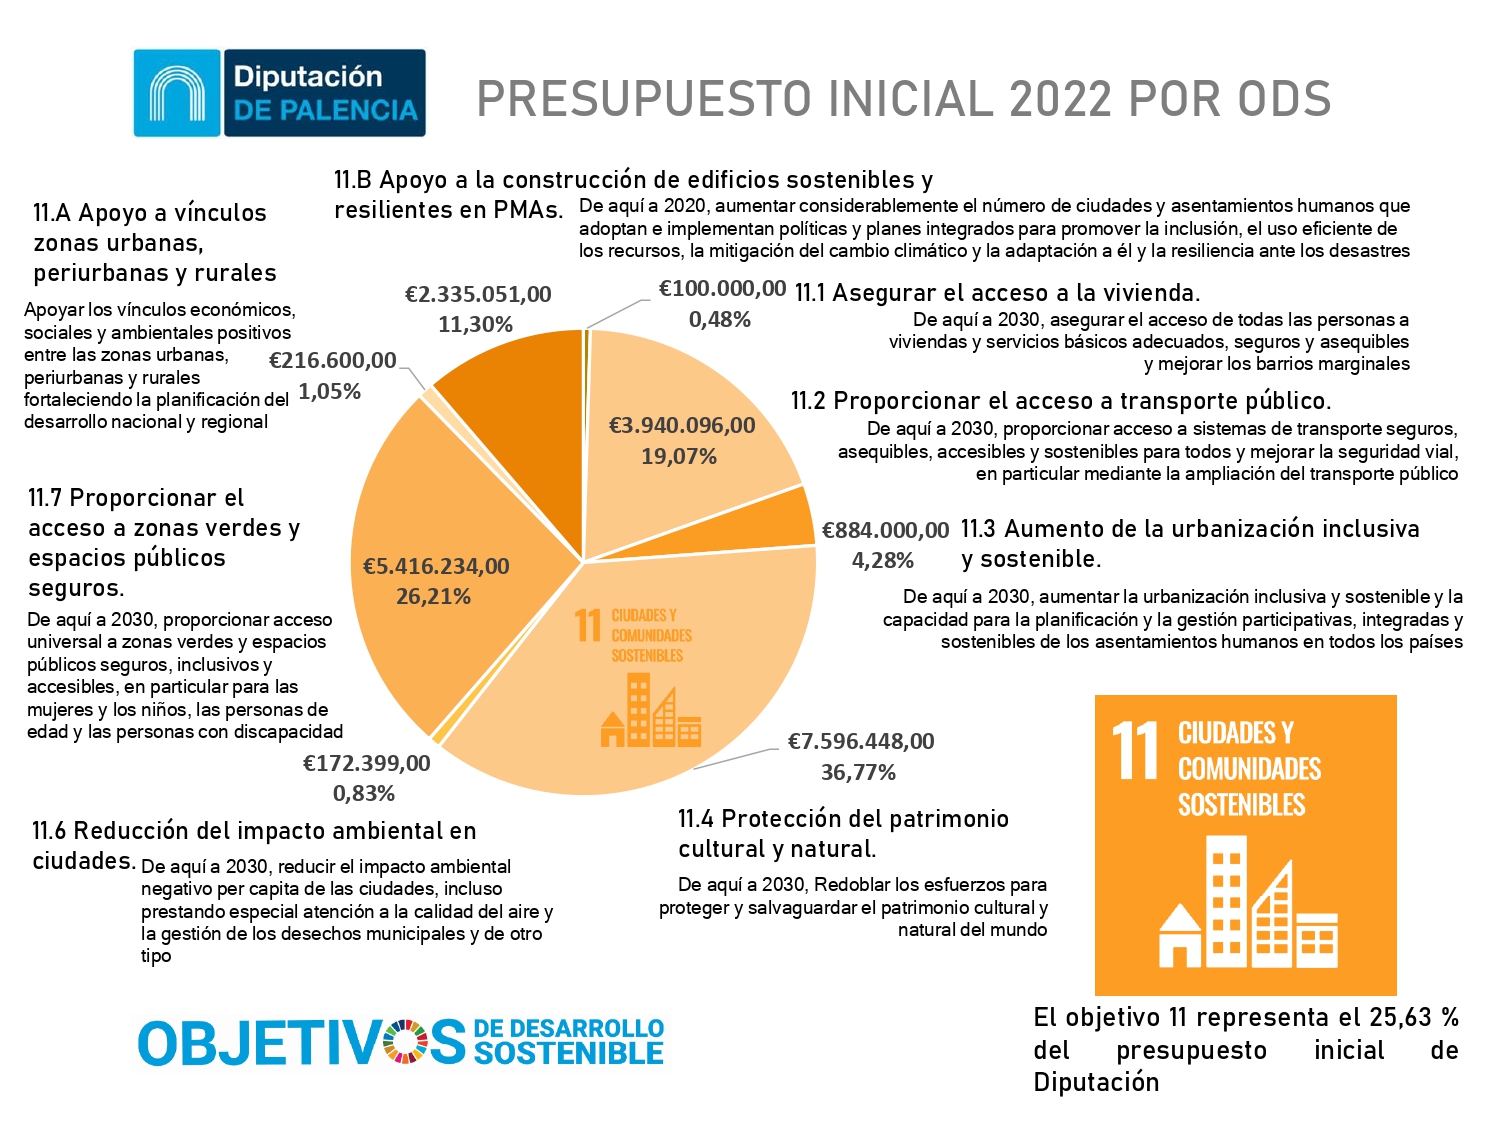 ODS OBJETIVO 11 CIUDADES Y COMUNIDADES SOSTENIBLES - PRESUPUESTOS 2022